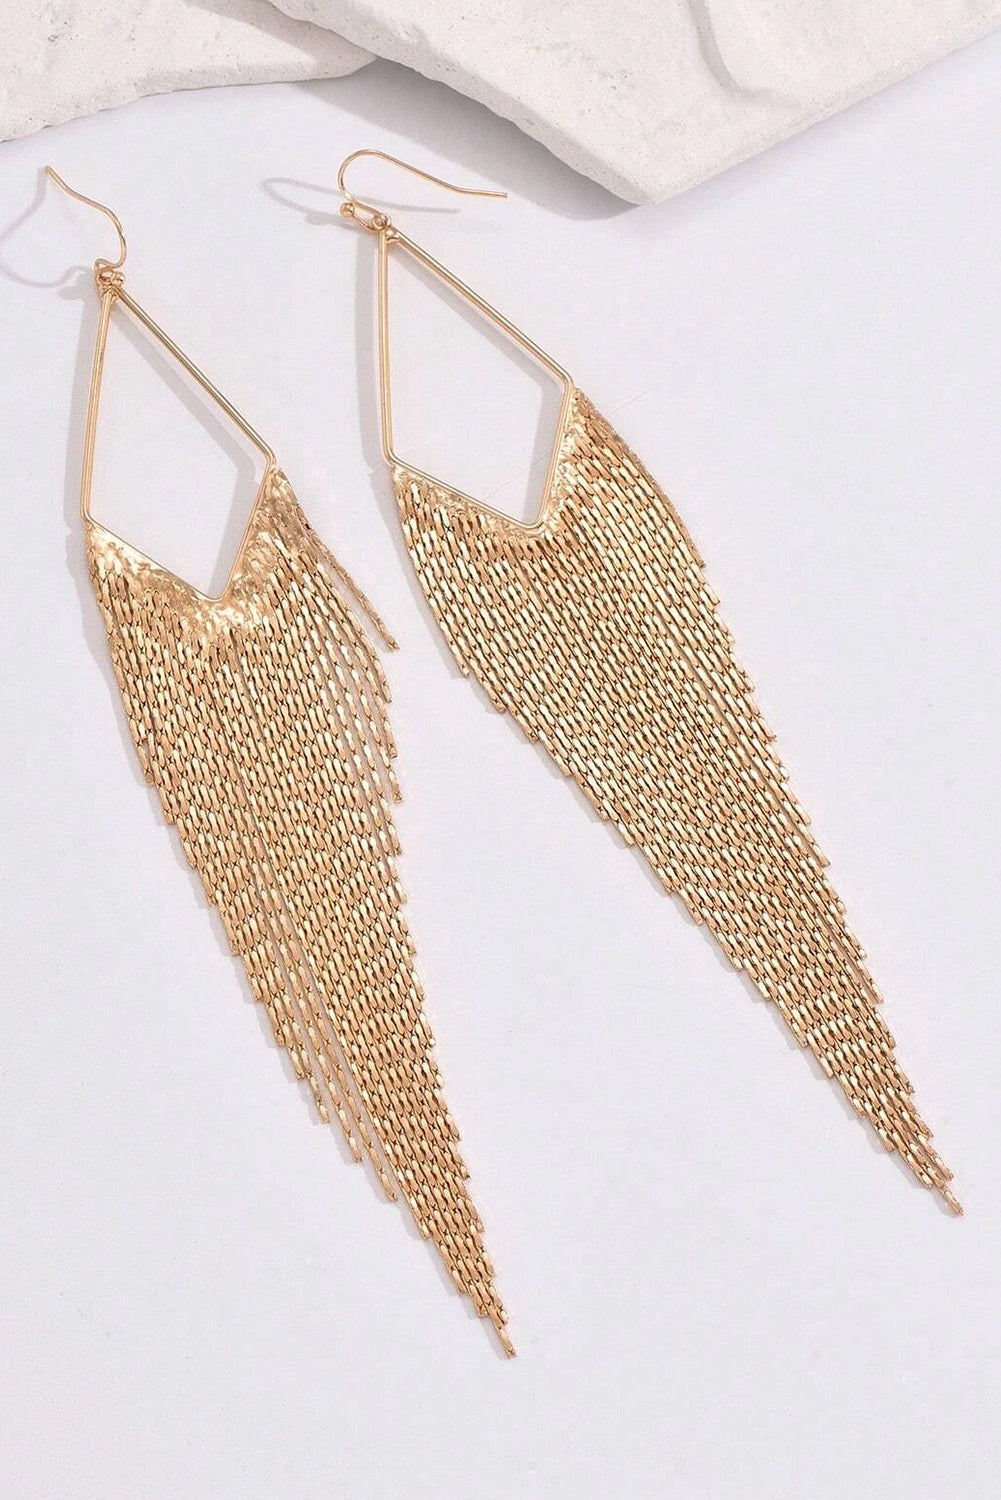 Gold Tassel Long Chain Dangle Earrings Jewelry JT's Designer Fashion